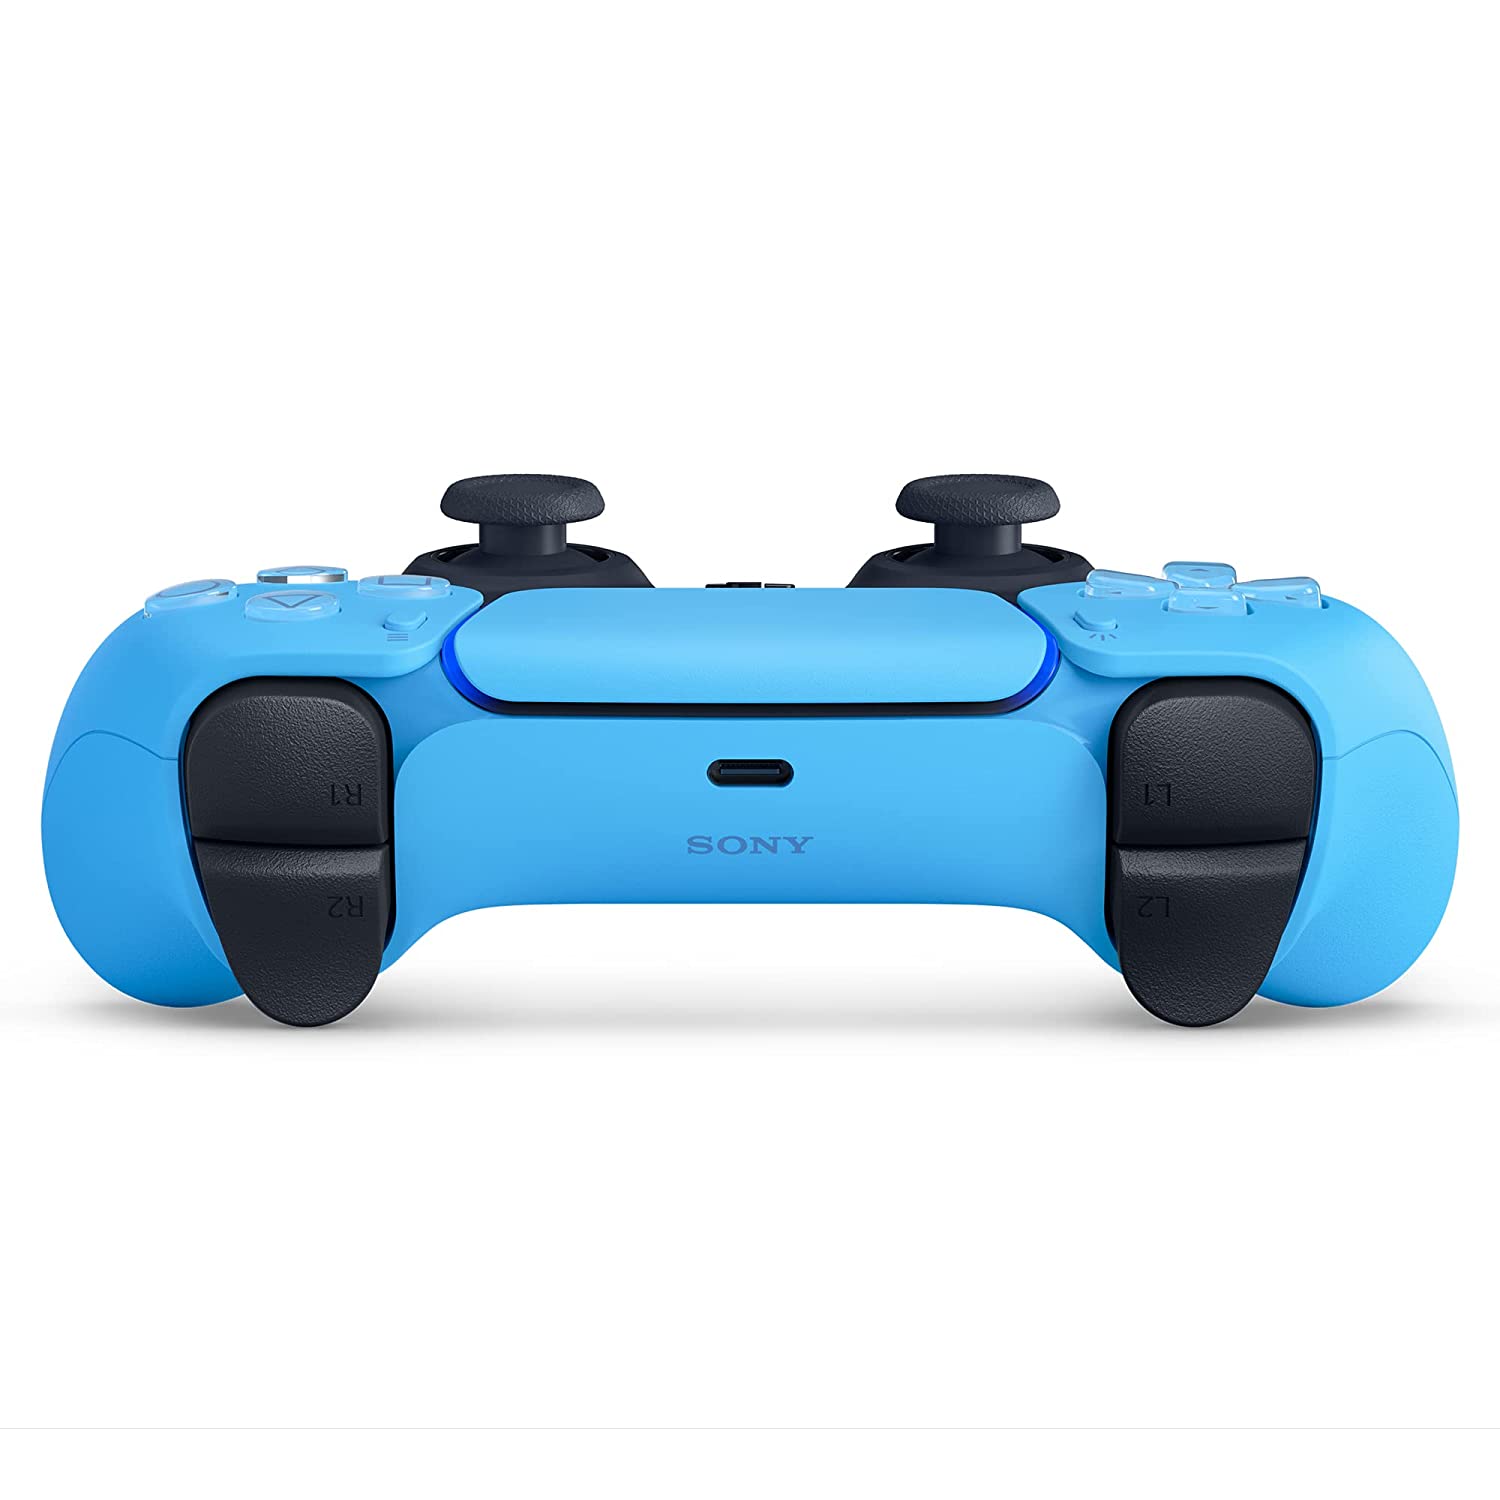 Скриншоты Беспроводной геймпад DualSense для PS5 Starlight Blue (Звездный синий) интернет-магазин Омегагейм